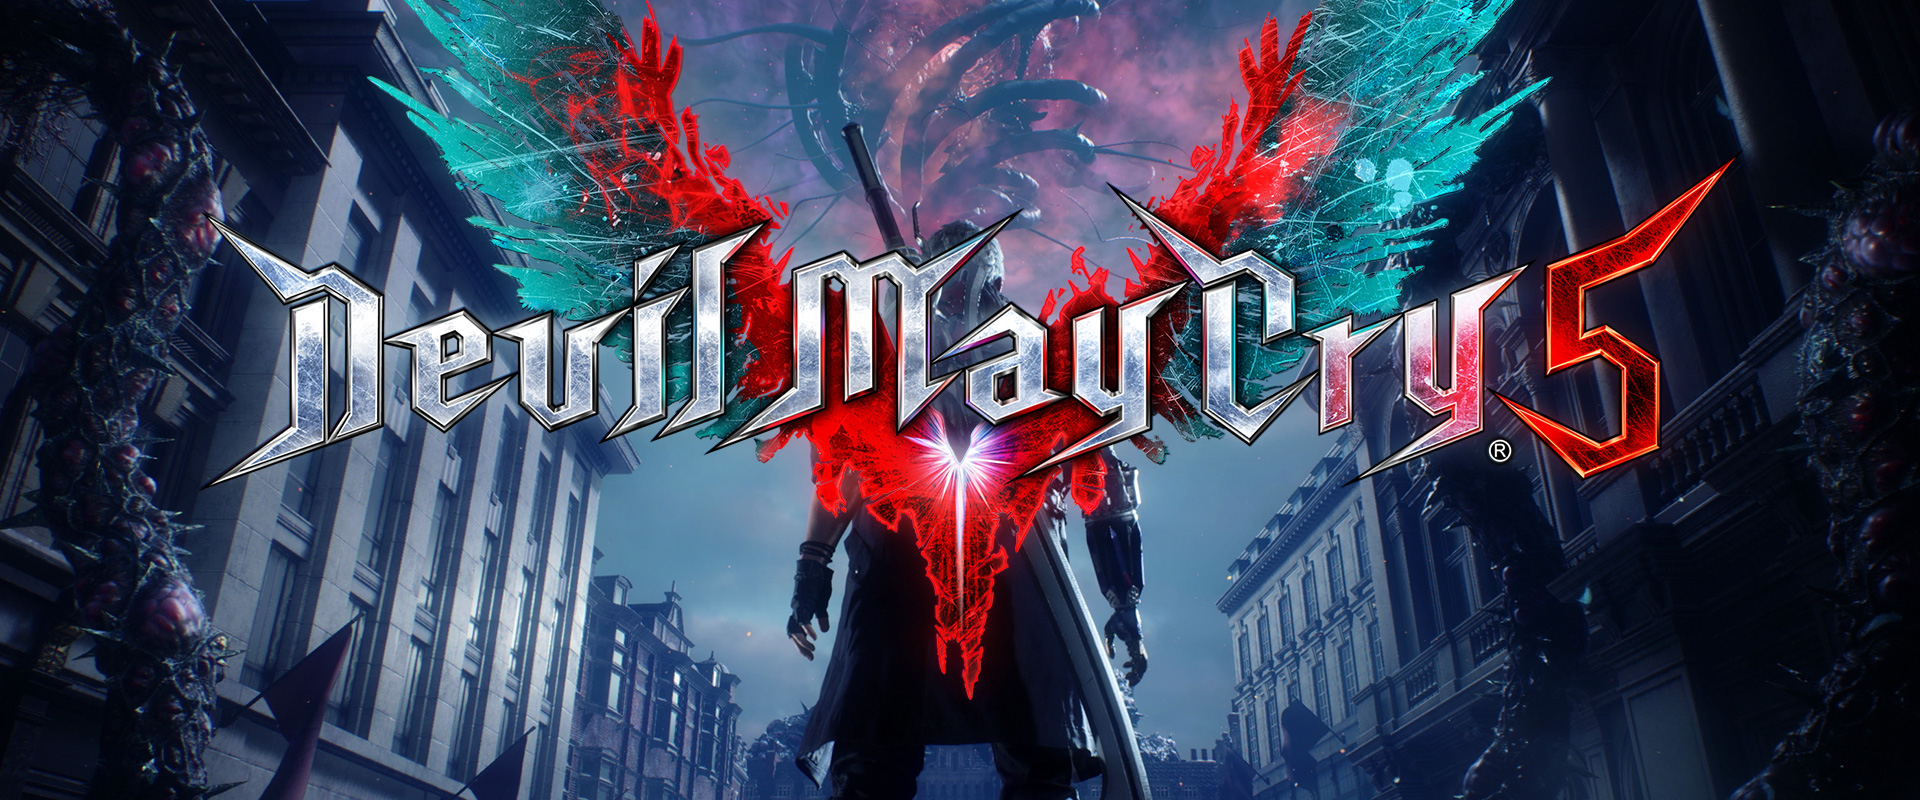 8000 dolláros limitált kiadást kapott a Devil May Cry 5